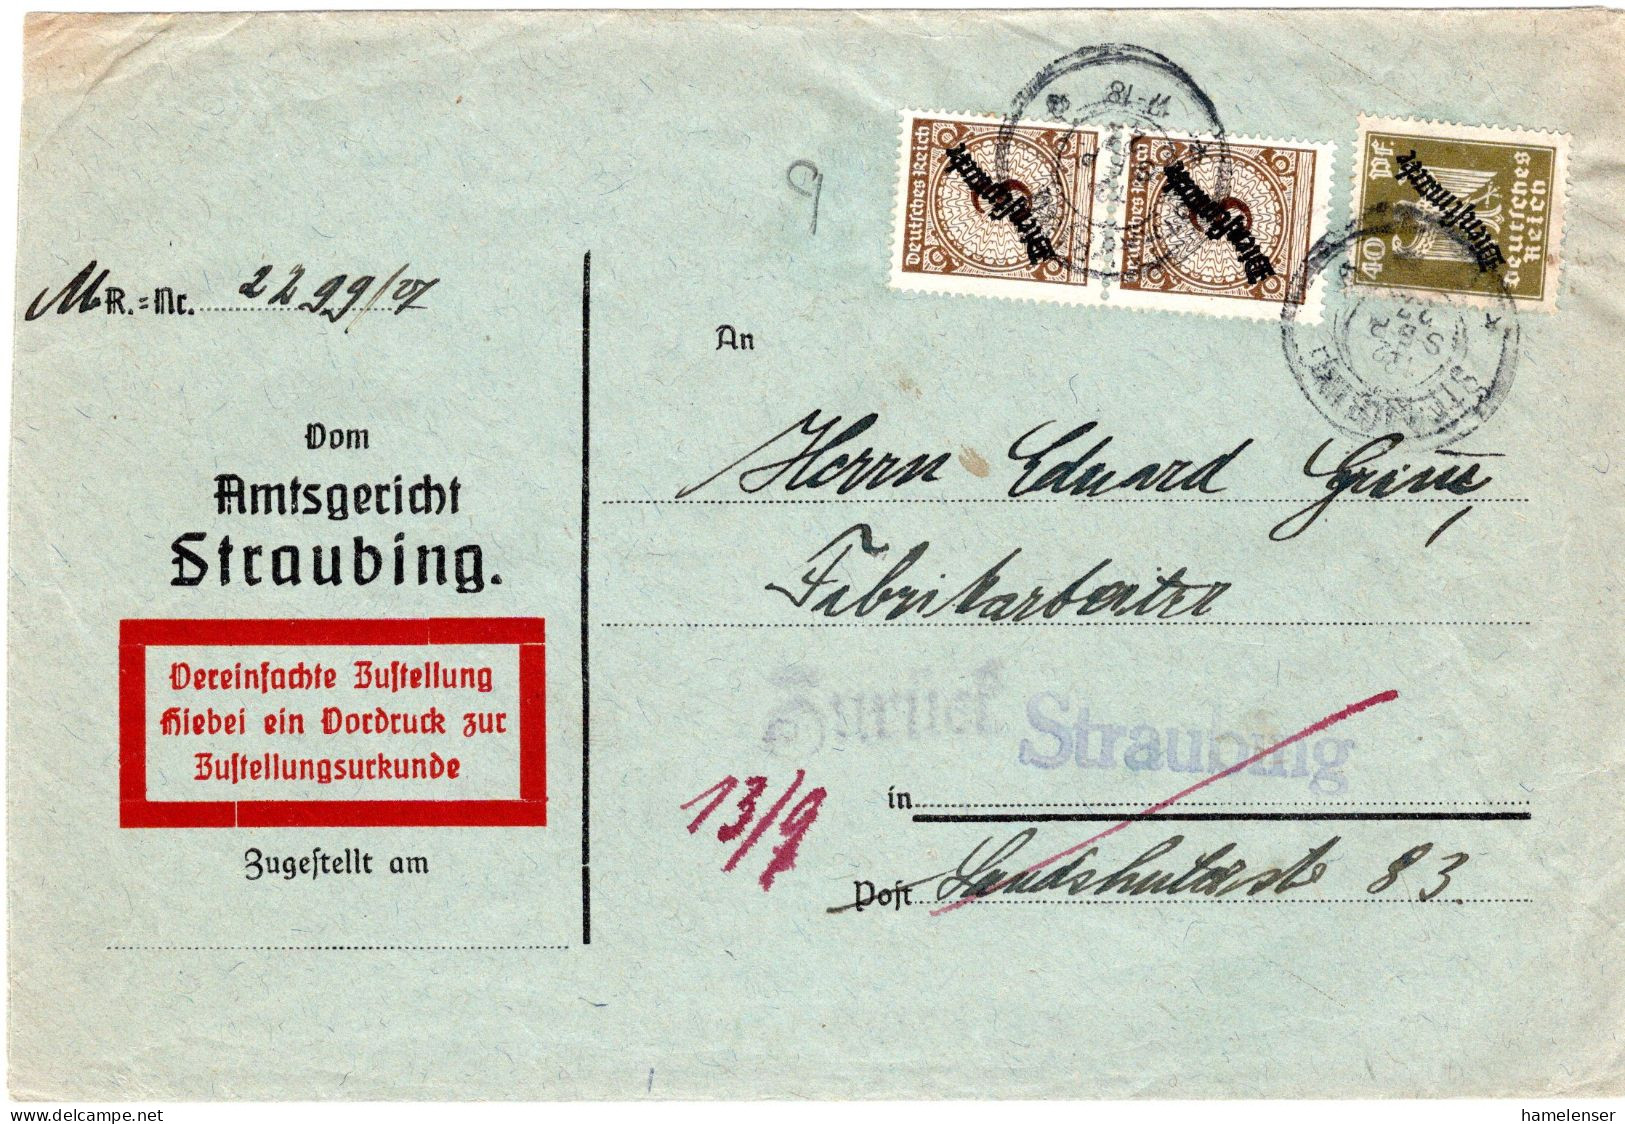 64445 - Deutsches Reich / Dienst - 1927 - 40Pfg Adler MiF A OrtsZUBf STRAUBING, Zurueck Als "Empfaenger .. Ausgewandert" - Officials